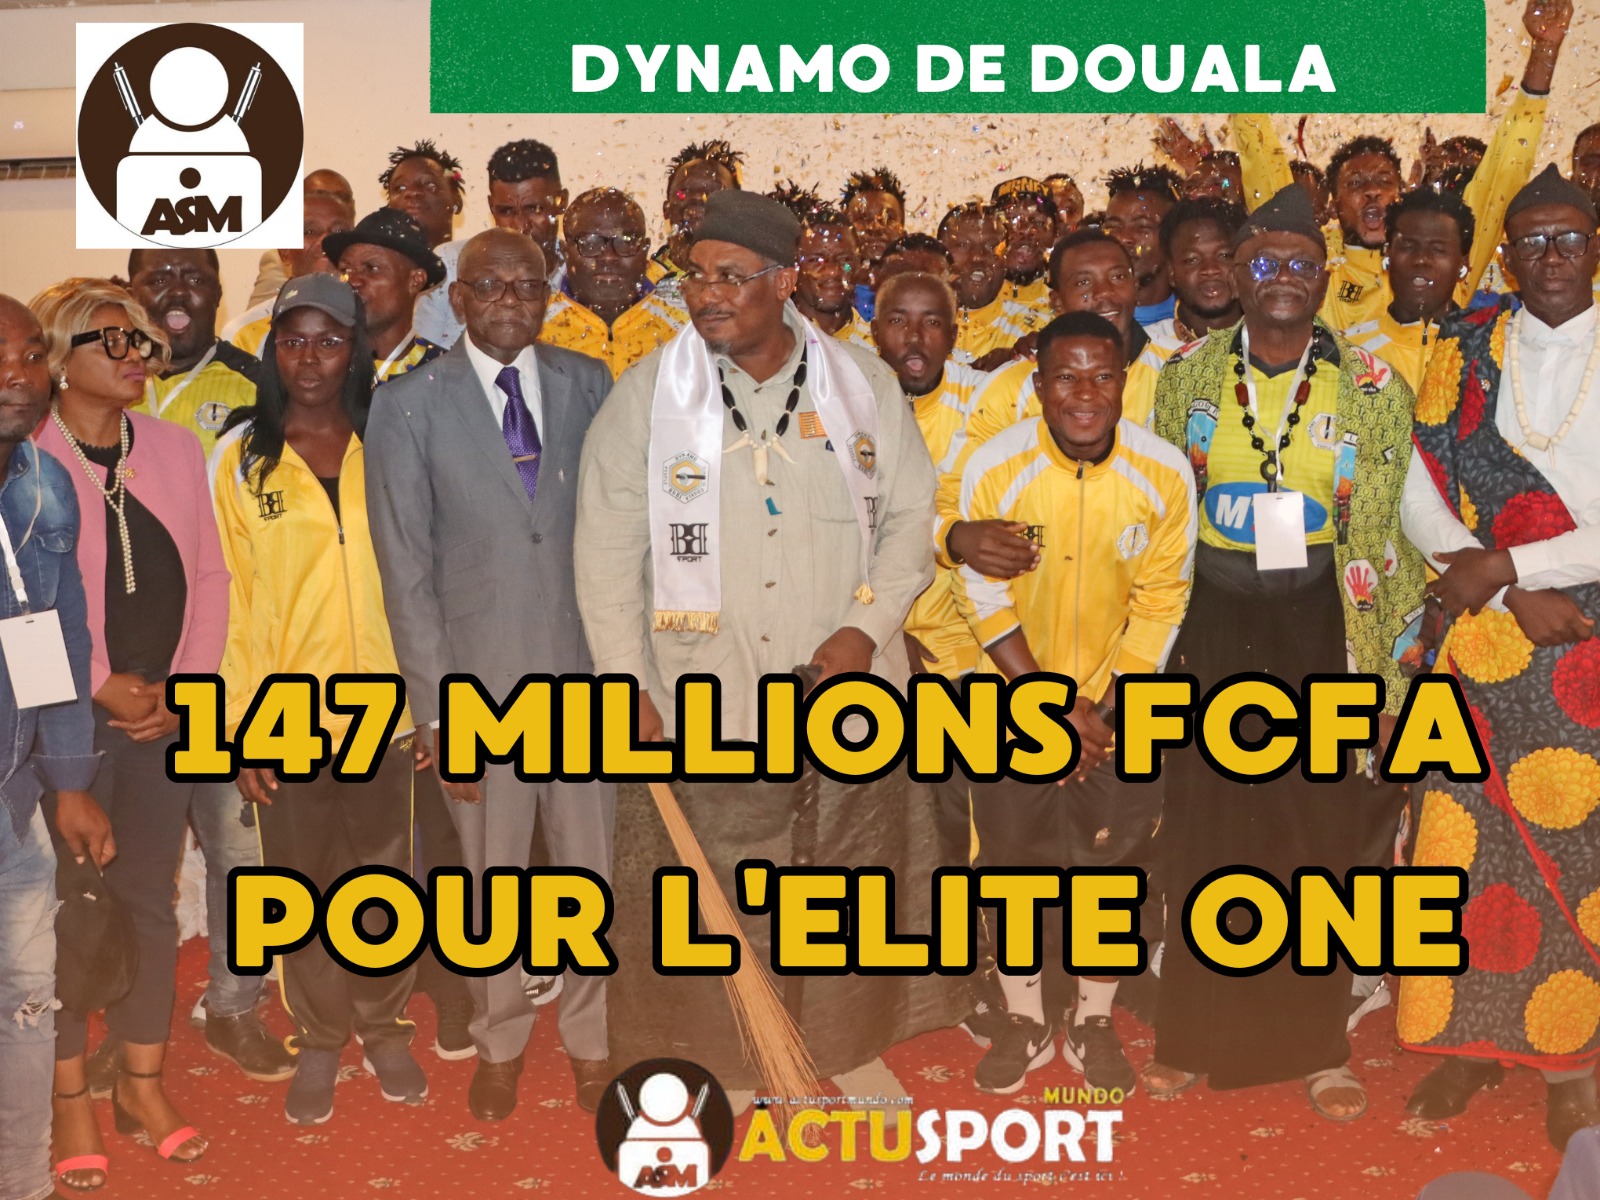 DYNAMO DE DOUALA: 147 MILLIONS FCFA POUR L'ELITE ONE